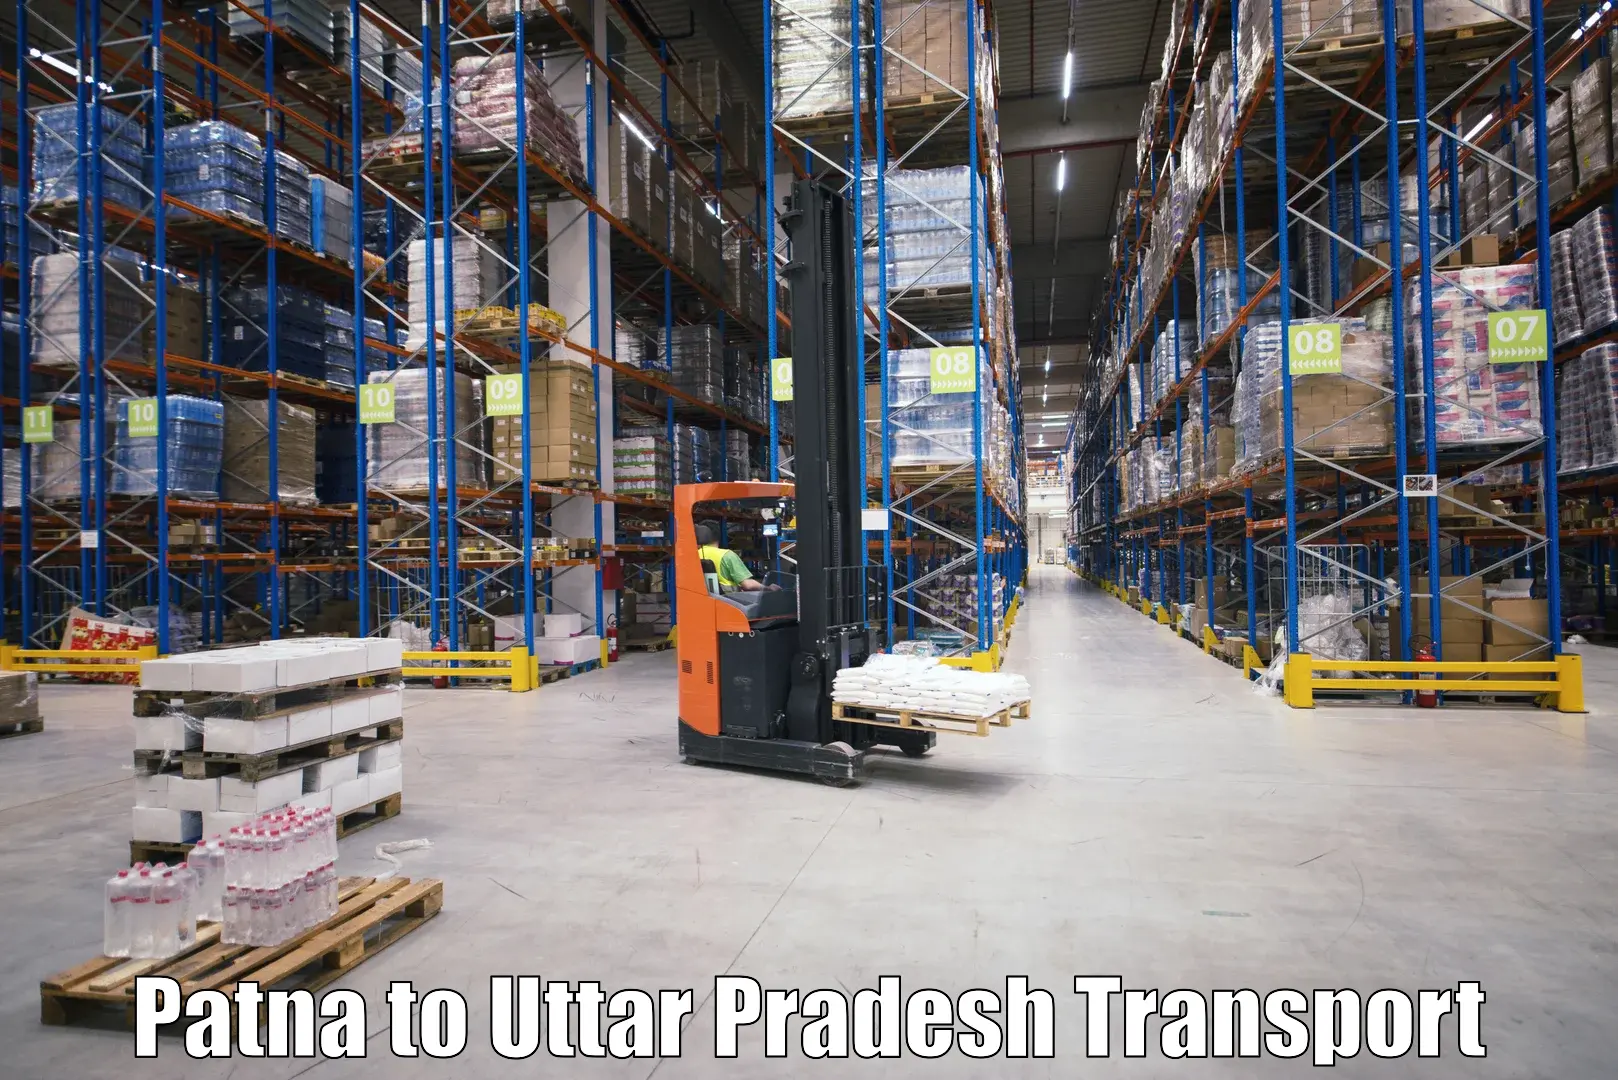 Daily parcel service transport Patna to Gajraula